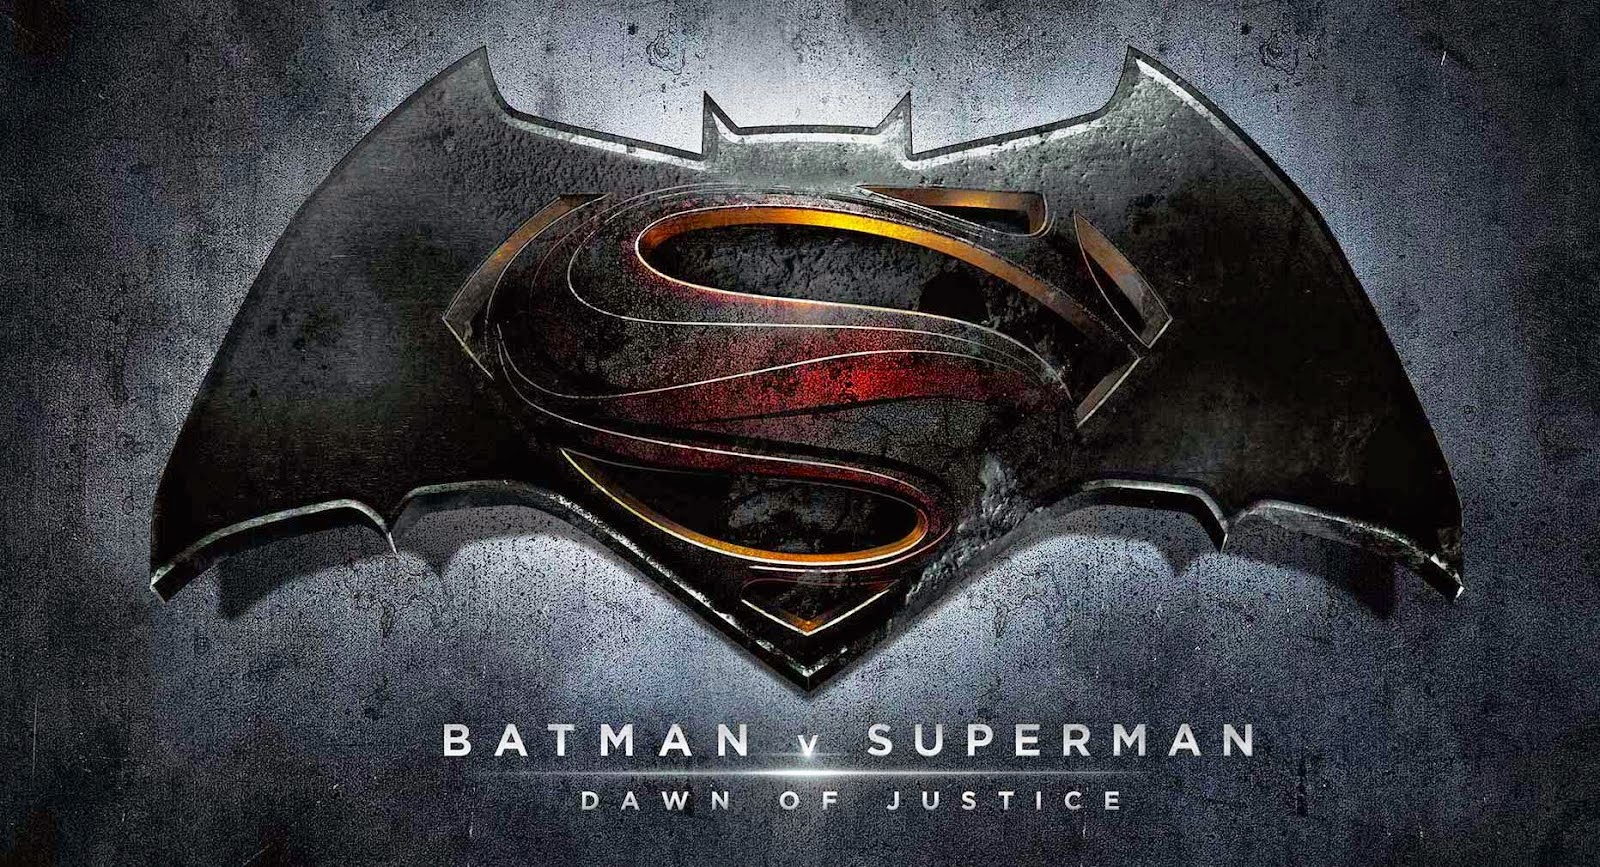 SDCC 2015: BATMAN Gadgets and Weapons in BATMAN V. SUPERMAN